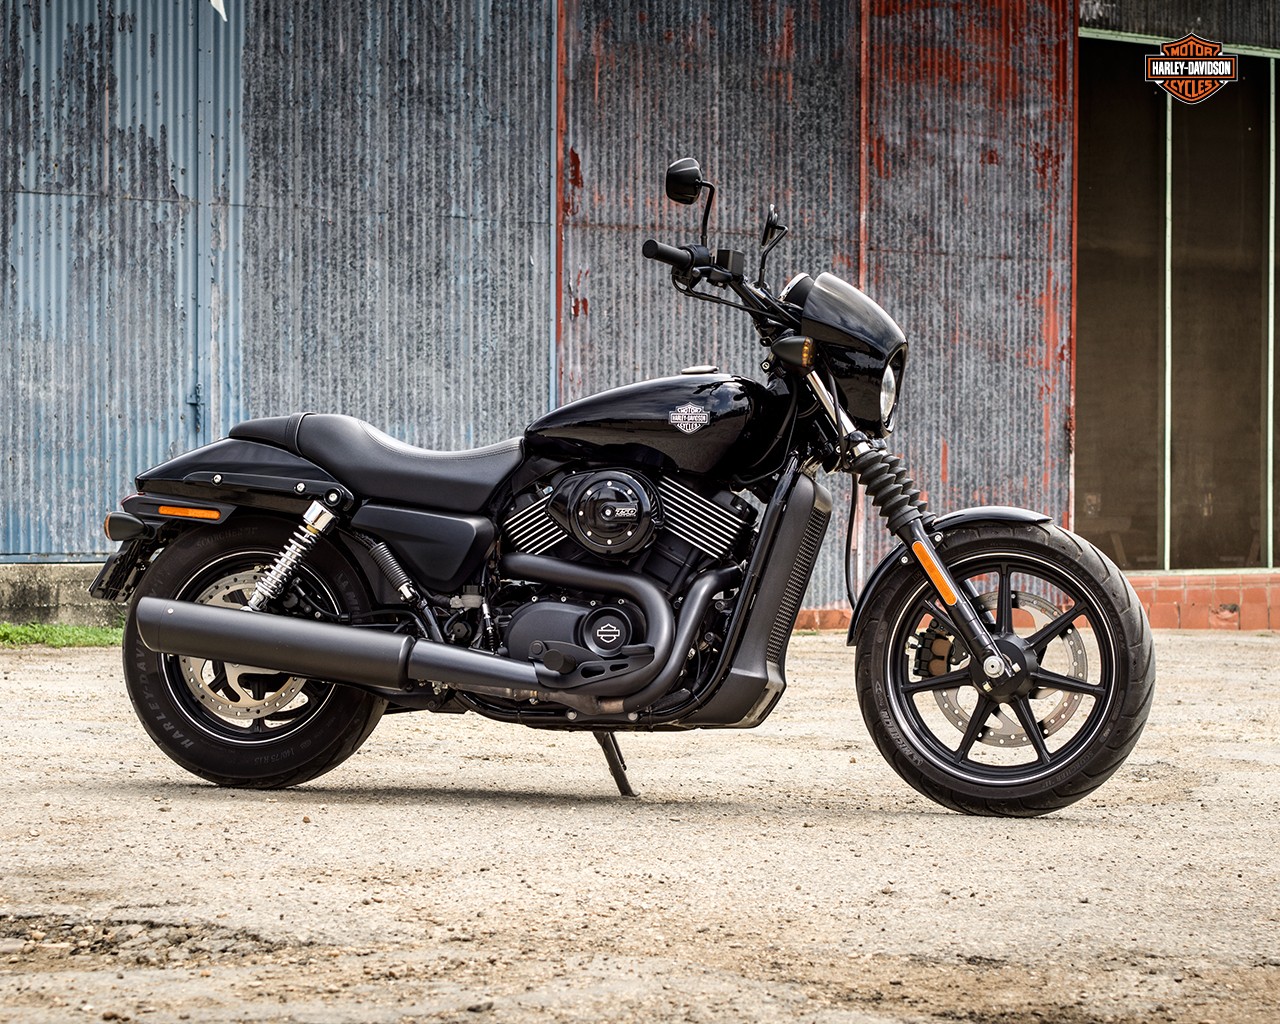 Harley Davidson Street Recalled Over Brake Issue Indian Models Affected